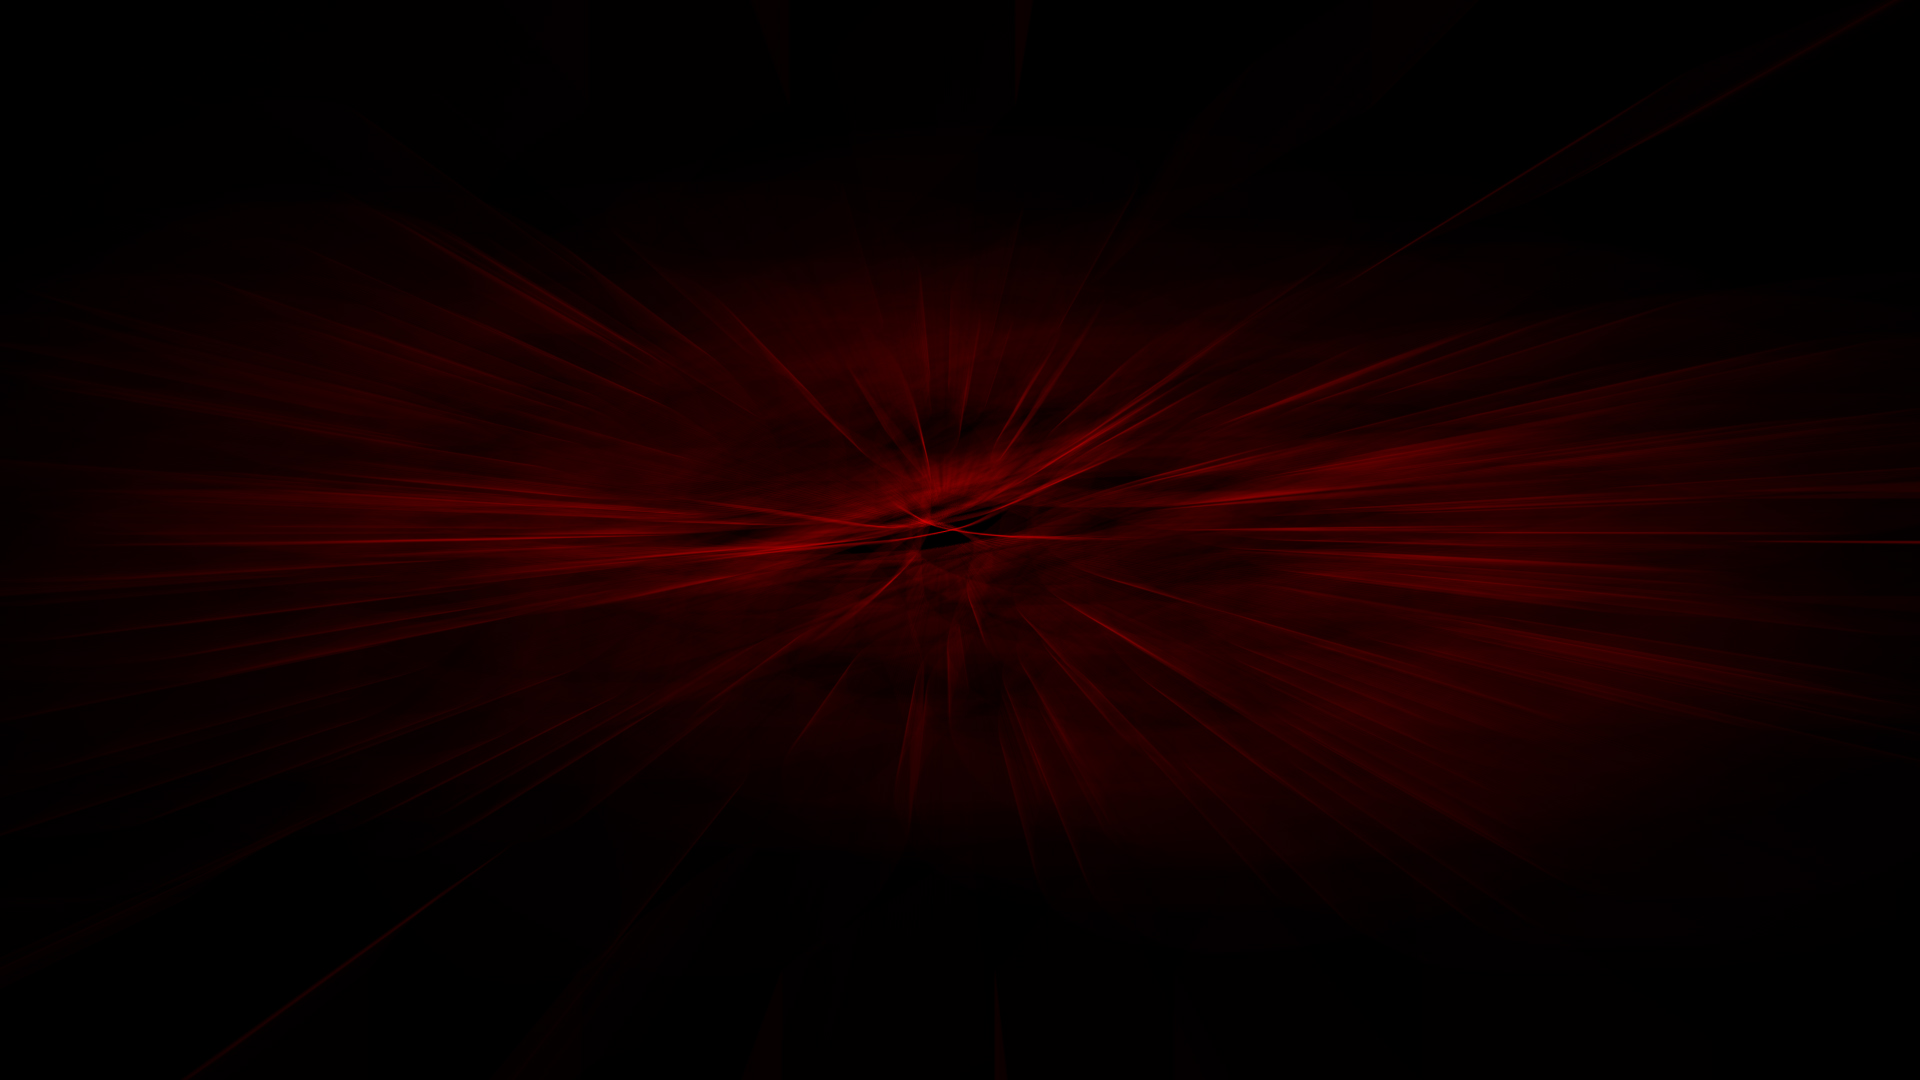 Hình nền đen đỏ trừu tượng sẽ làm cho máy tính của bạn trở nên tinh tế và đầy cảm hứng. Với kết hợp hài hòa giữa sắc đen và đỏ, hình nền này mang đến một cái nhìn hoàn toàn mới mẻ cho màn hình của bạn. Đừng ngại ngần, hãy trải nghiệm ngay để cảm nhận sự khác biệt!